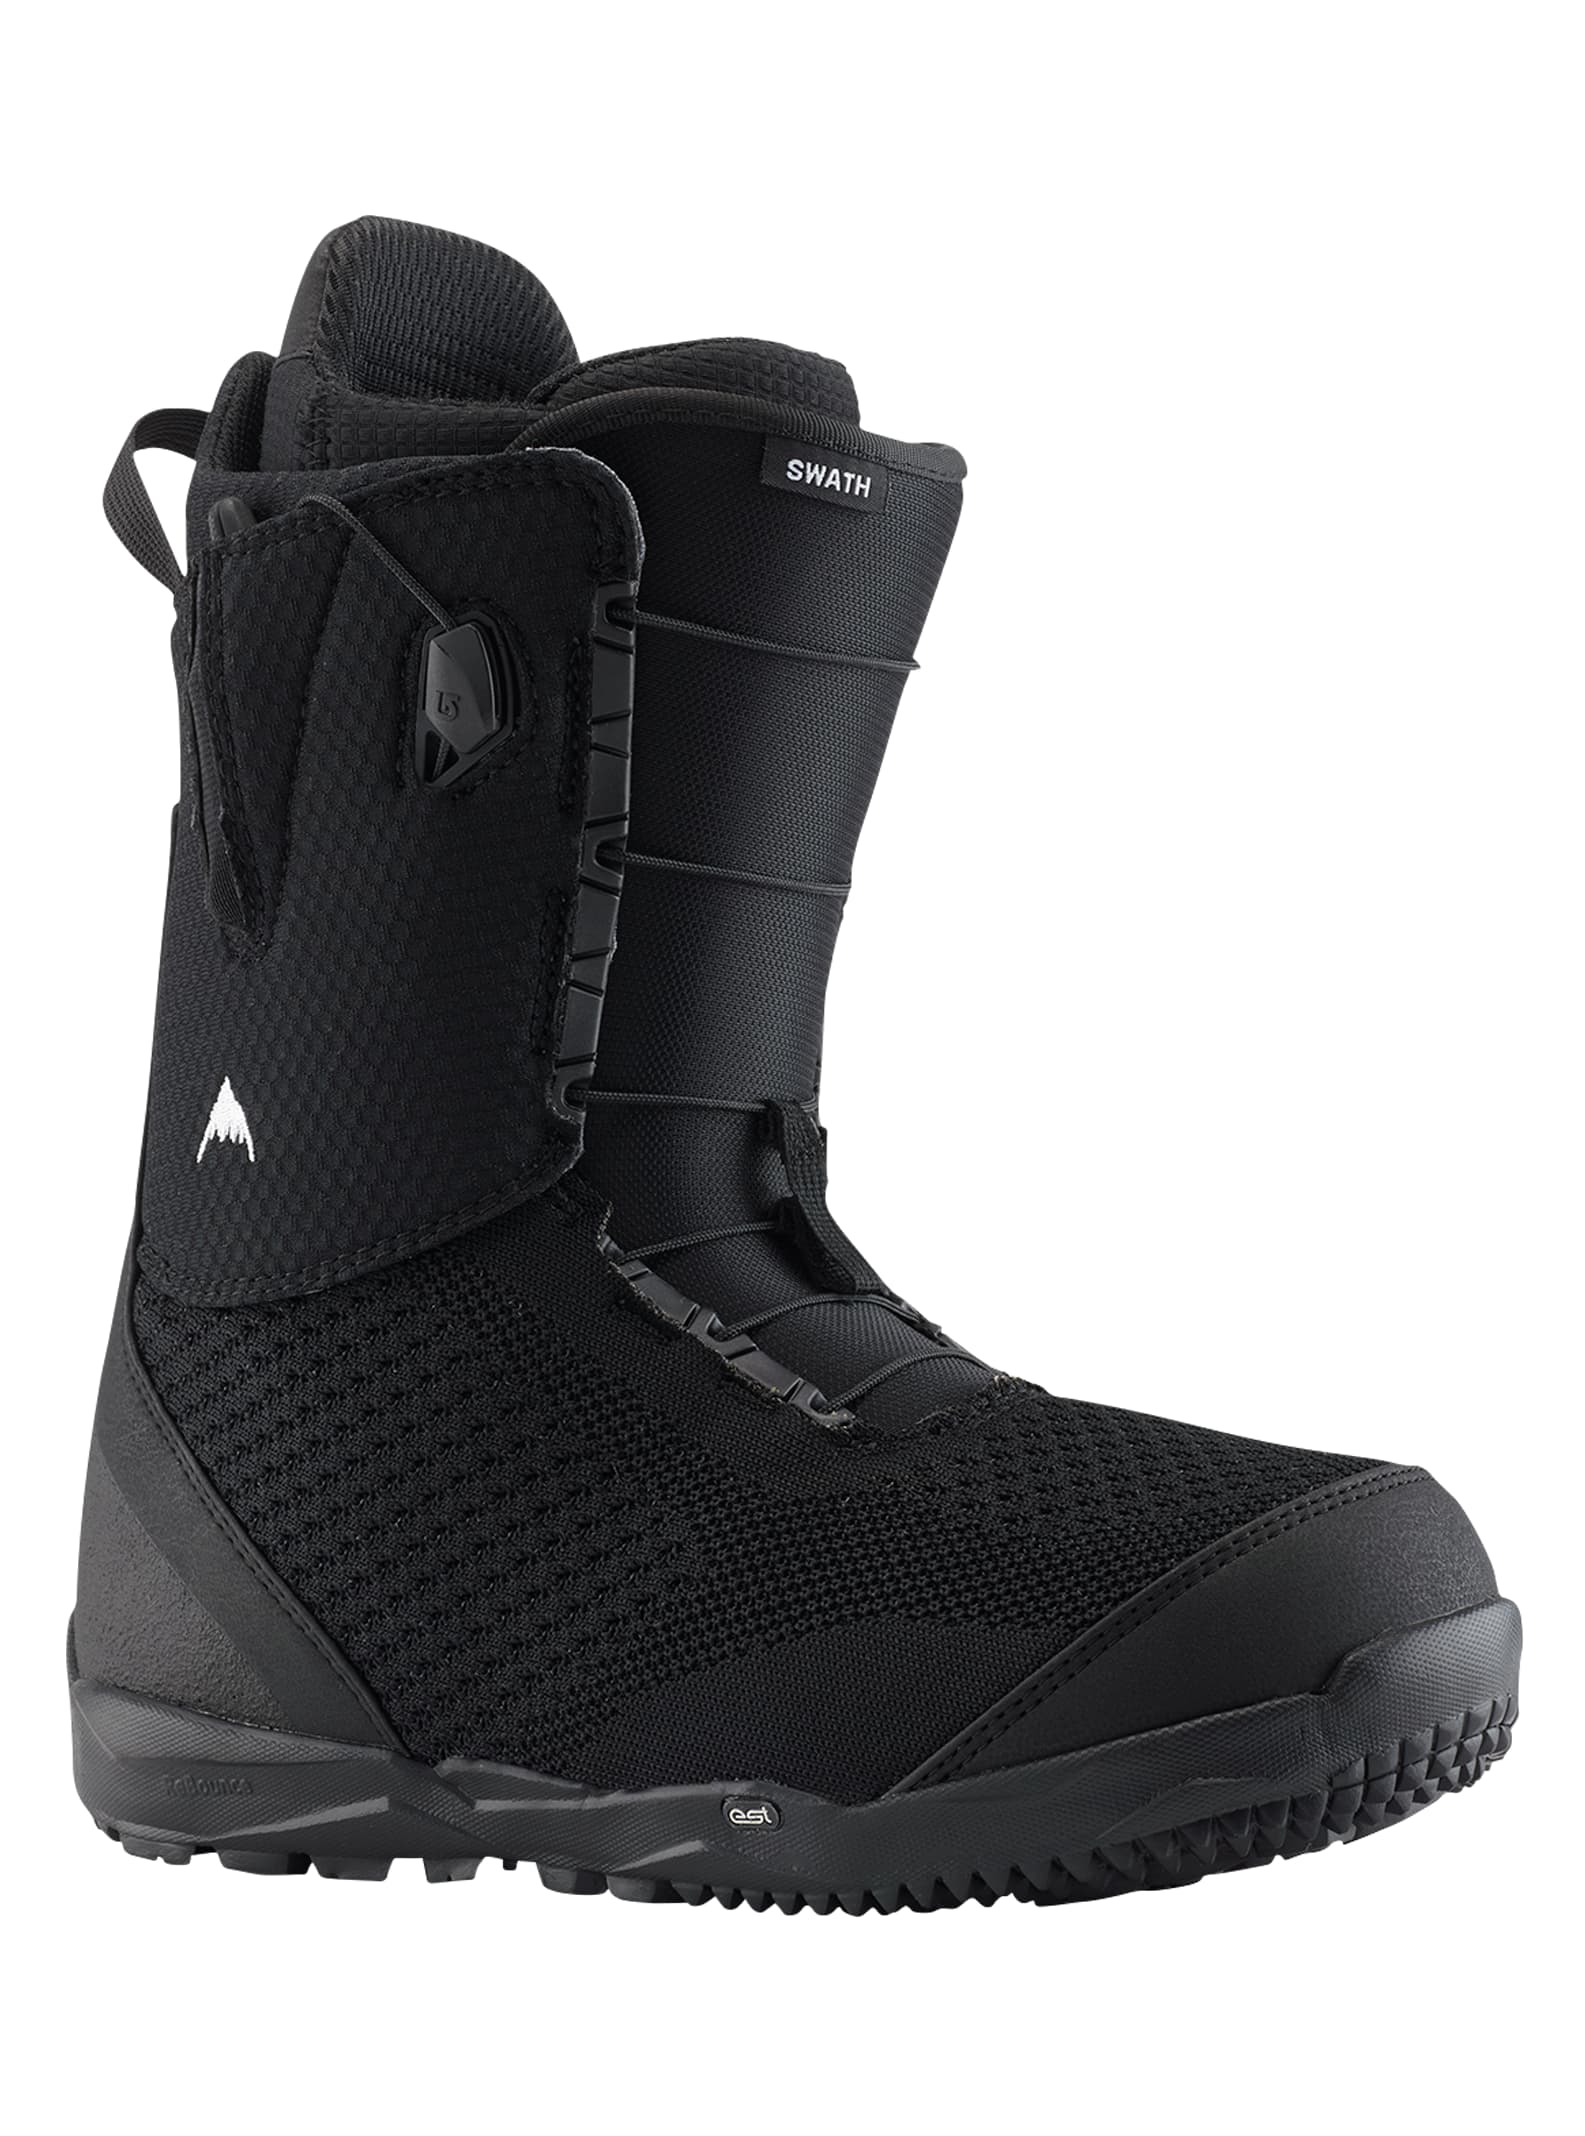 Burton - Boots de snowboard Swath, Black, 14